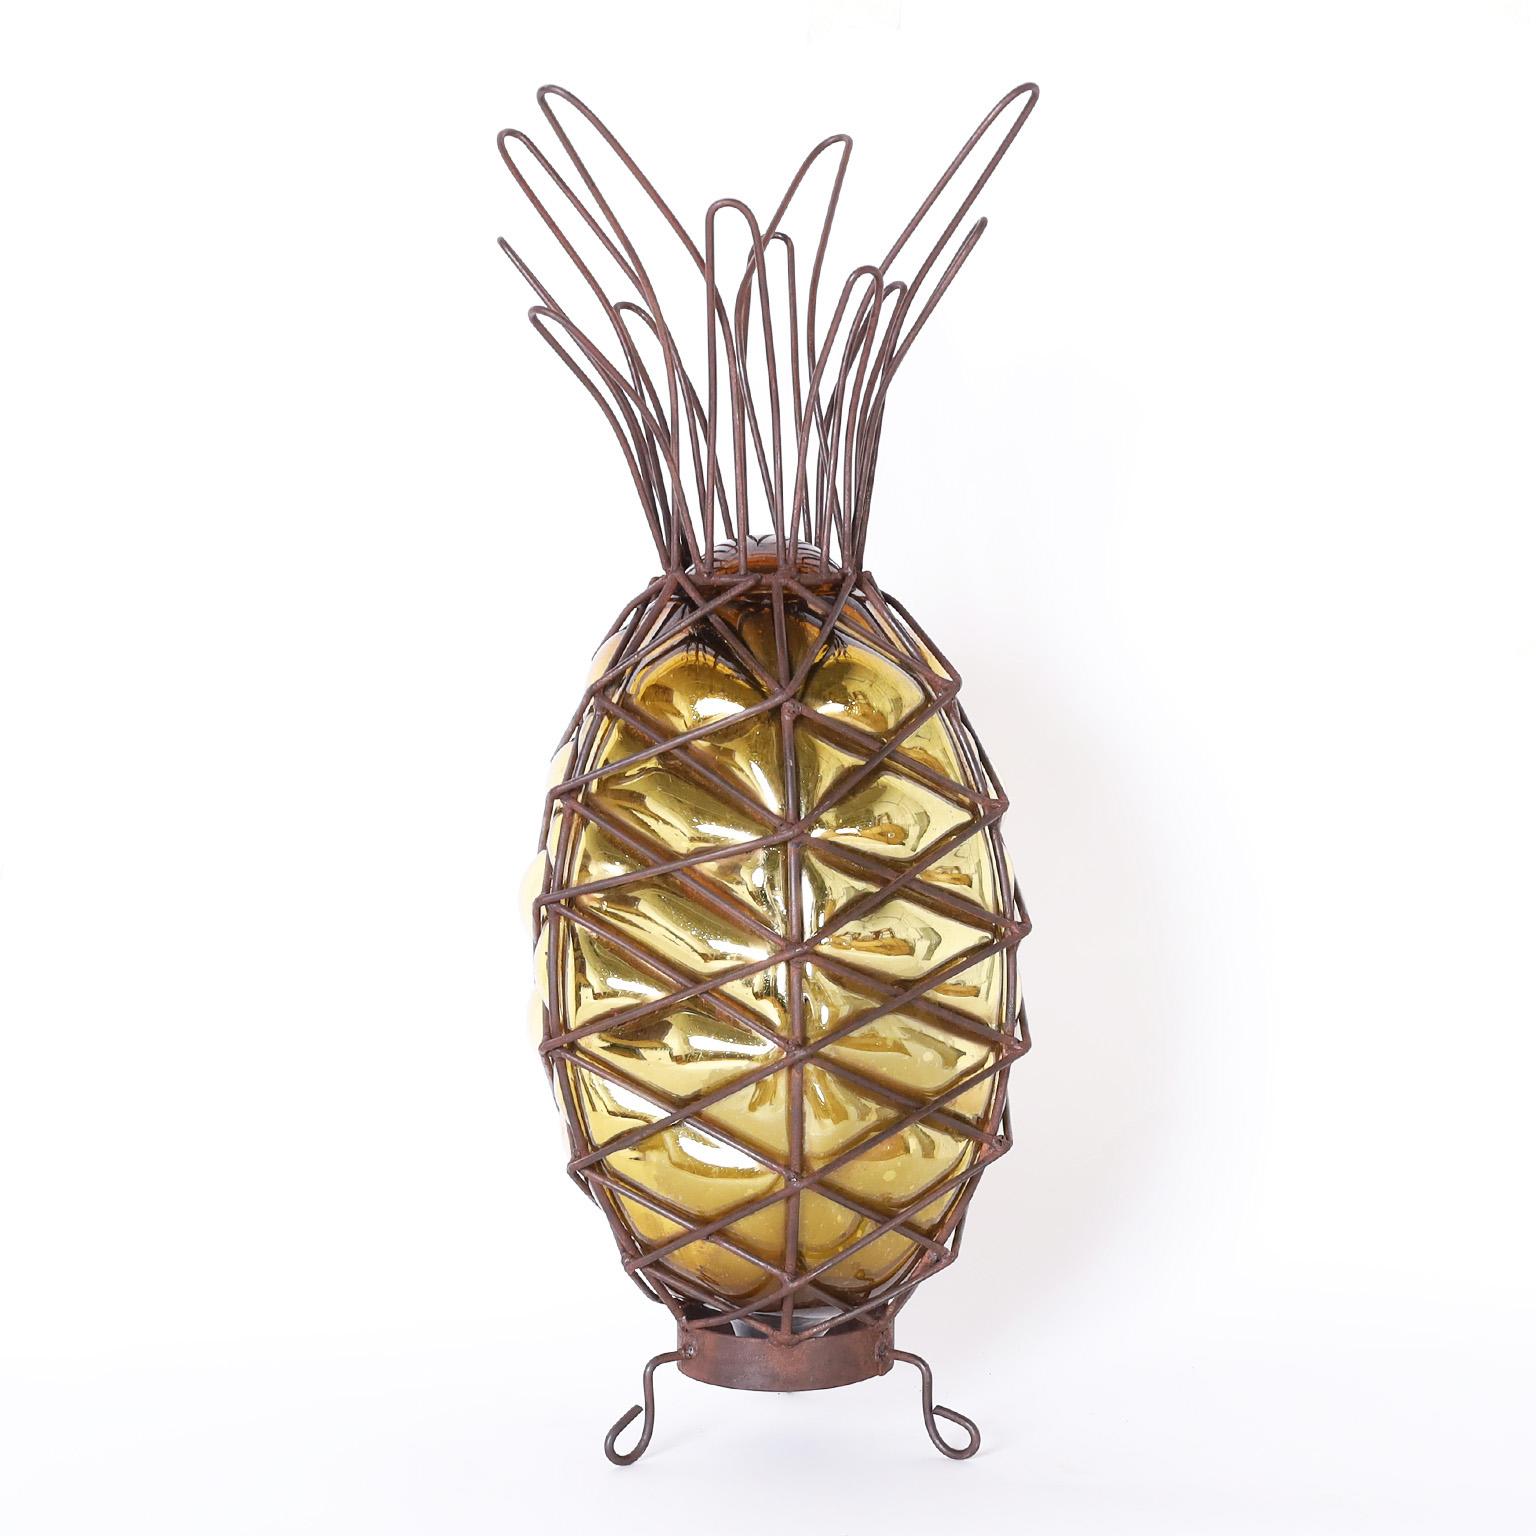 Auffälliges Paar dekorativer Ananas, handgefertigt mit einem stilisierten Metallrahmen, in den goldfarbenes Quecksilberglas eingeblasen ist.